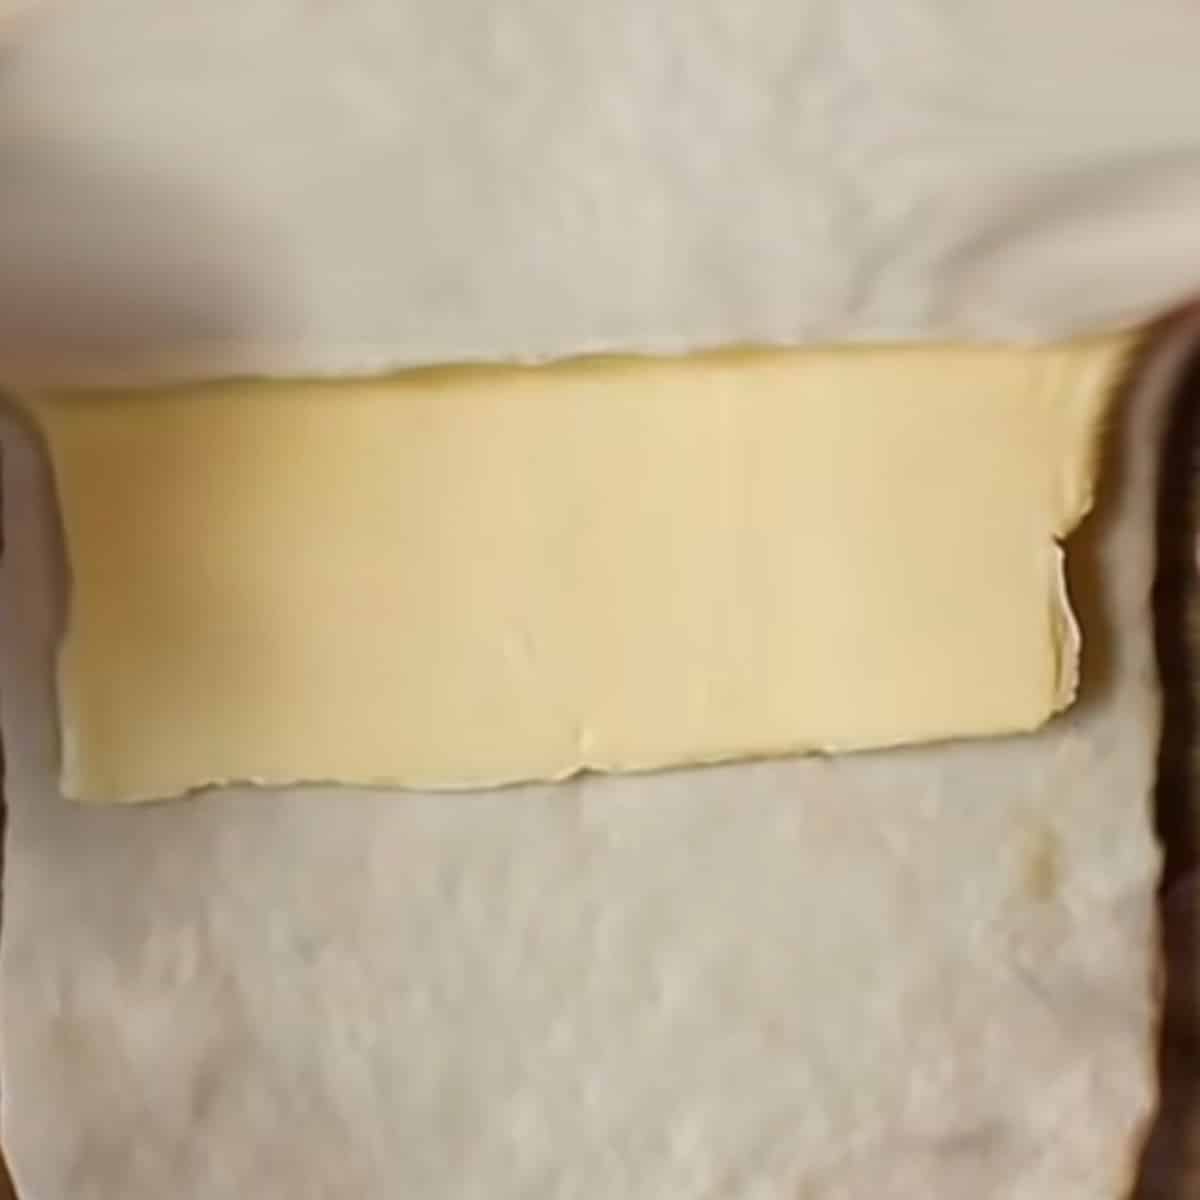 colocando a manteiga dentro da massa